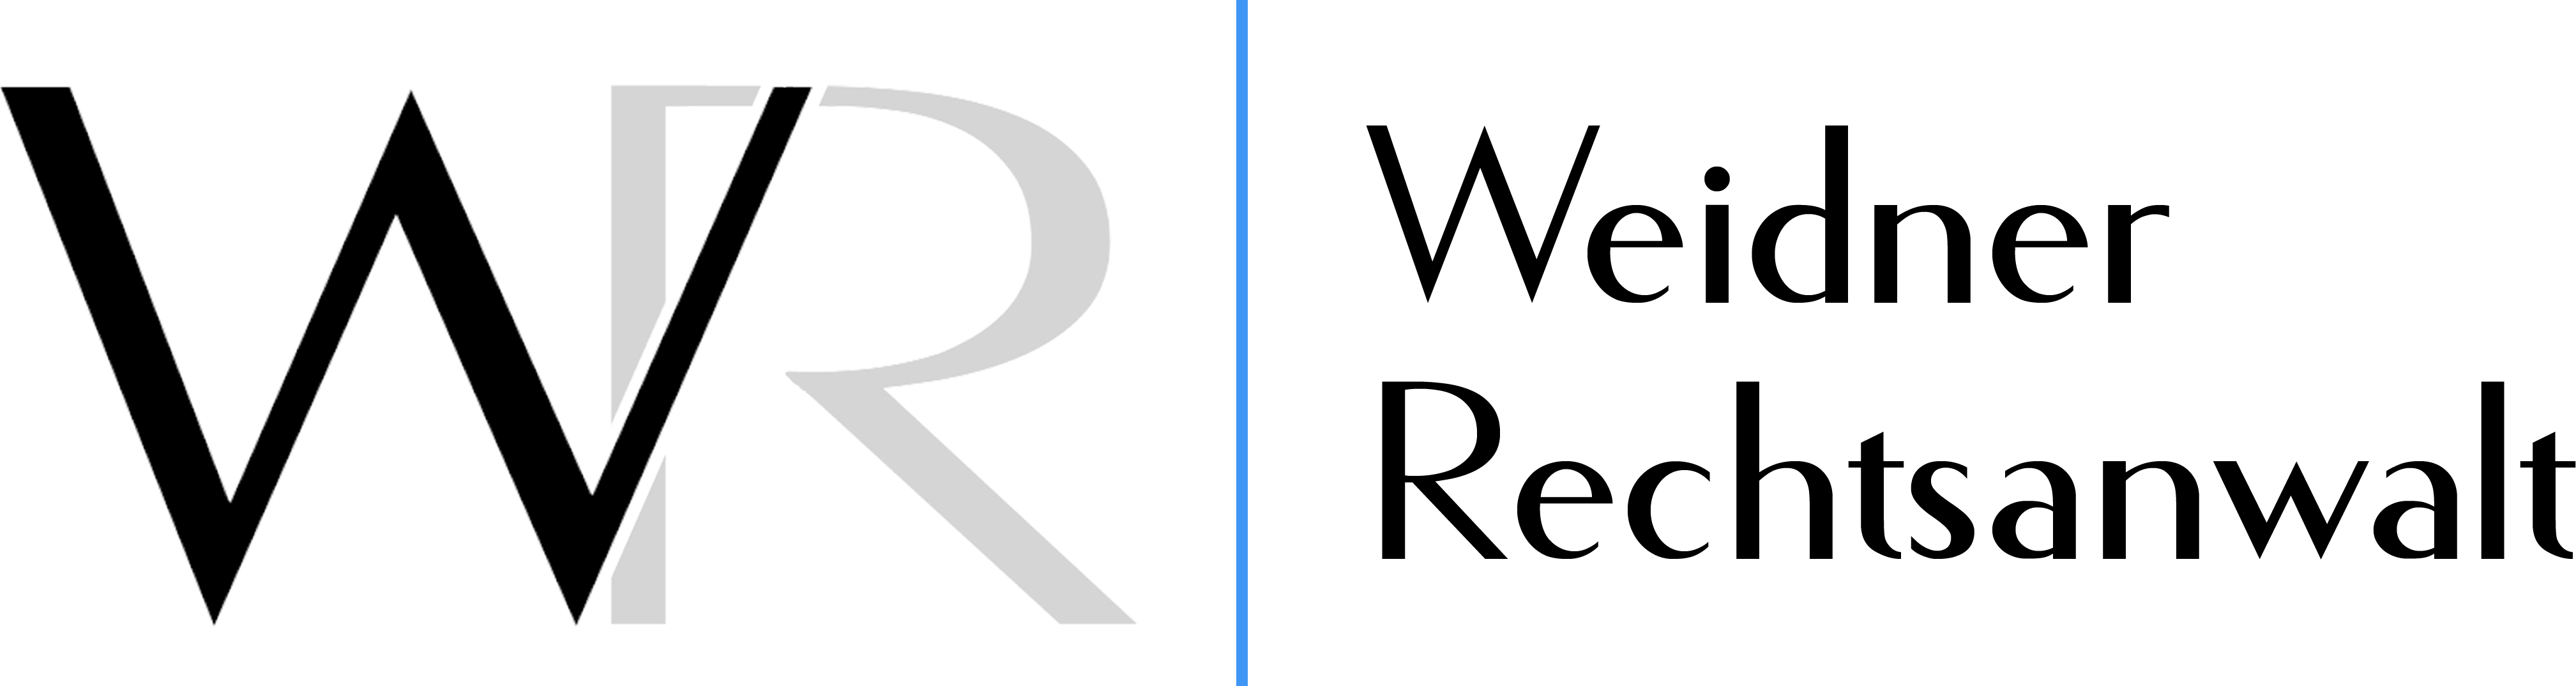 Rechtsanwalt Weidner Regensburg Logo quer